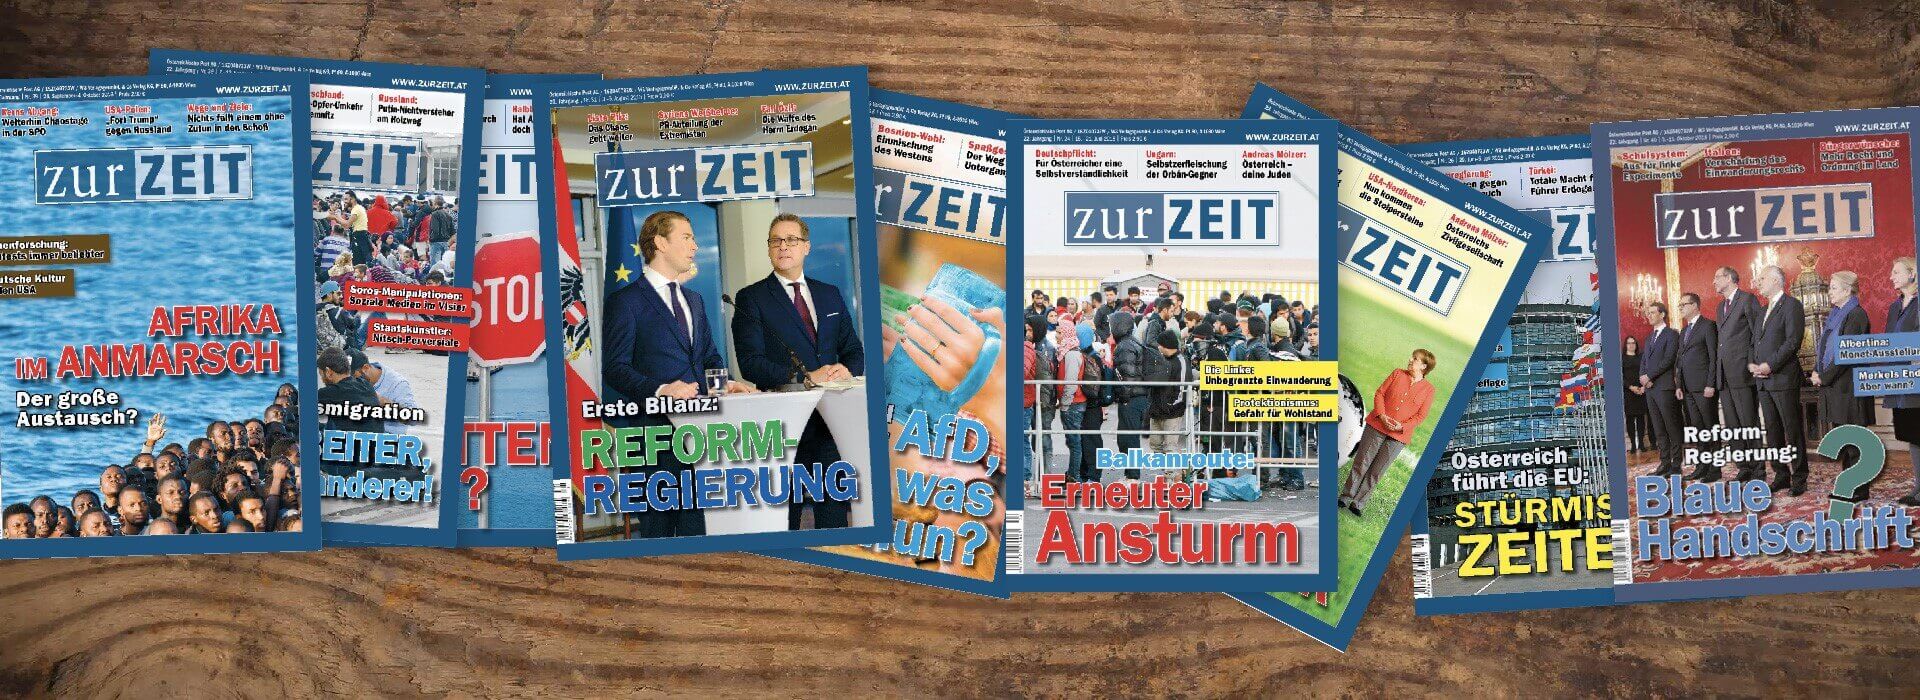 Ein Artikel des FPÖ-Magazins „Zur Zeit“ ist ein Skandal und dabei ganz auf Parteilinie – Ein Faktencheck